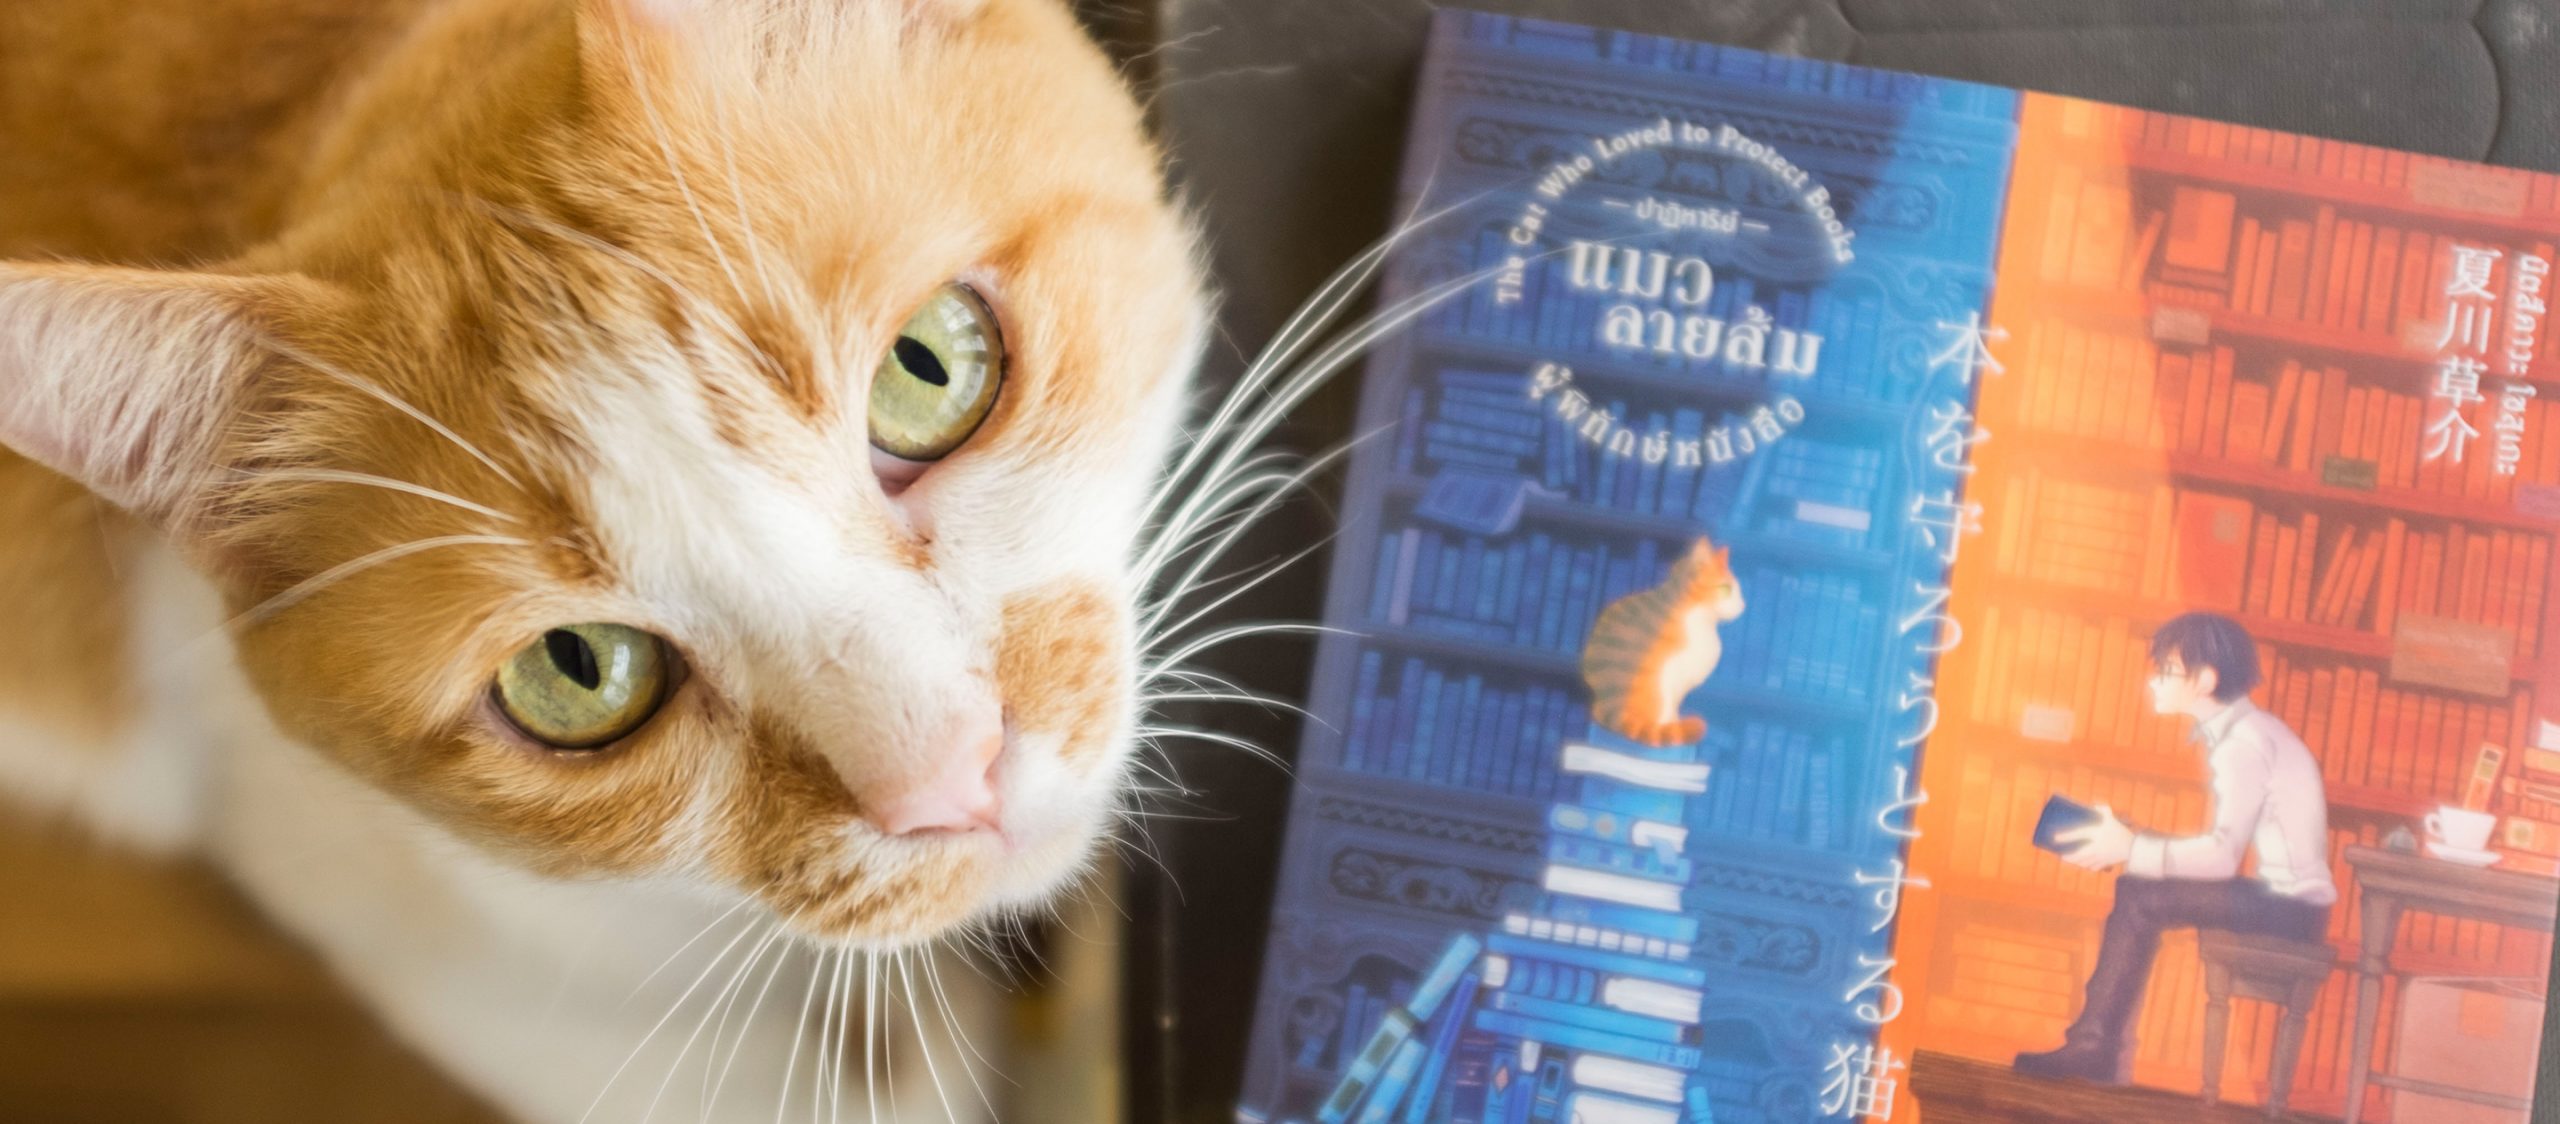 &#8220;อ่านหนังสือไปทำไม&#8221; ใคร่ครวญตัวเองไปกับเด็กหนุ่มและเจ้าแมวใน ปาฏิหาริย์แมวลายส้มผู้พิทักษ์หนังสือ